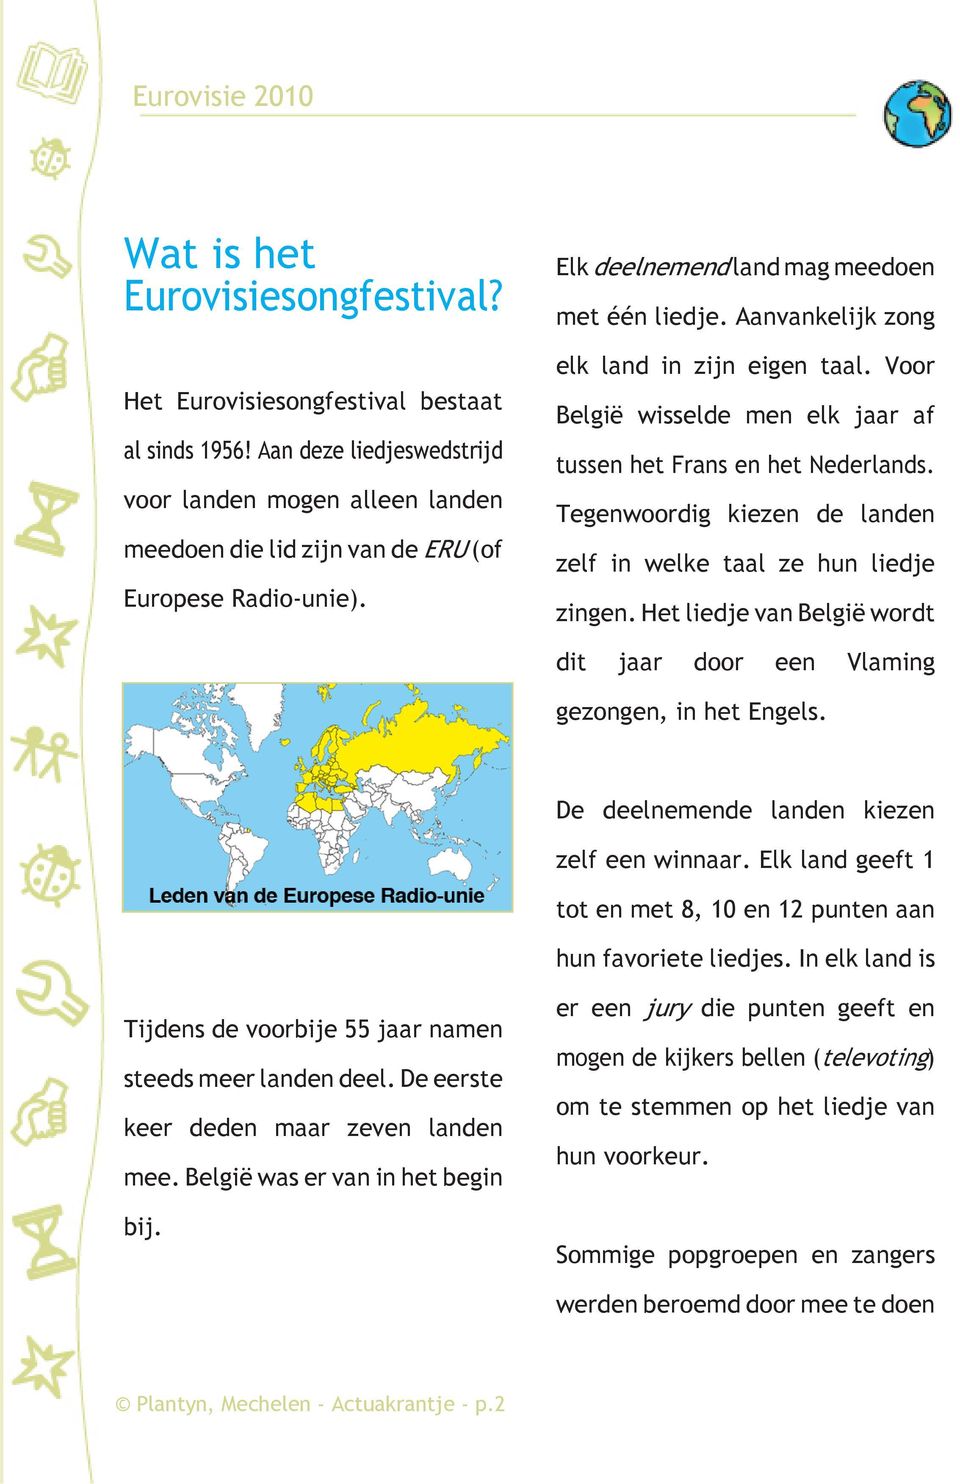 Tegenwoordig kiezen de landen zelf in welke taal ze hun liedje zingen. Het liedje van België wordt dit jaar door een Vlaming gezongen, in het Engels. De deelnemende landen kiezen zelf een winnaar.